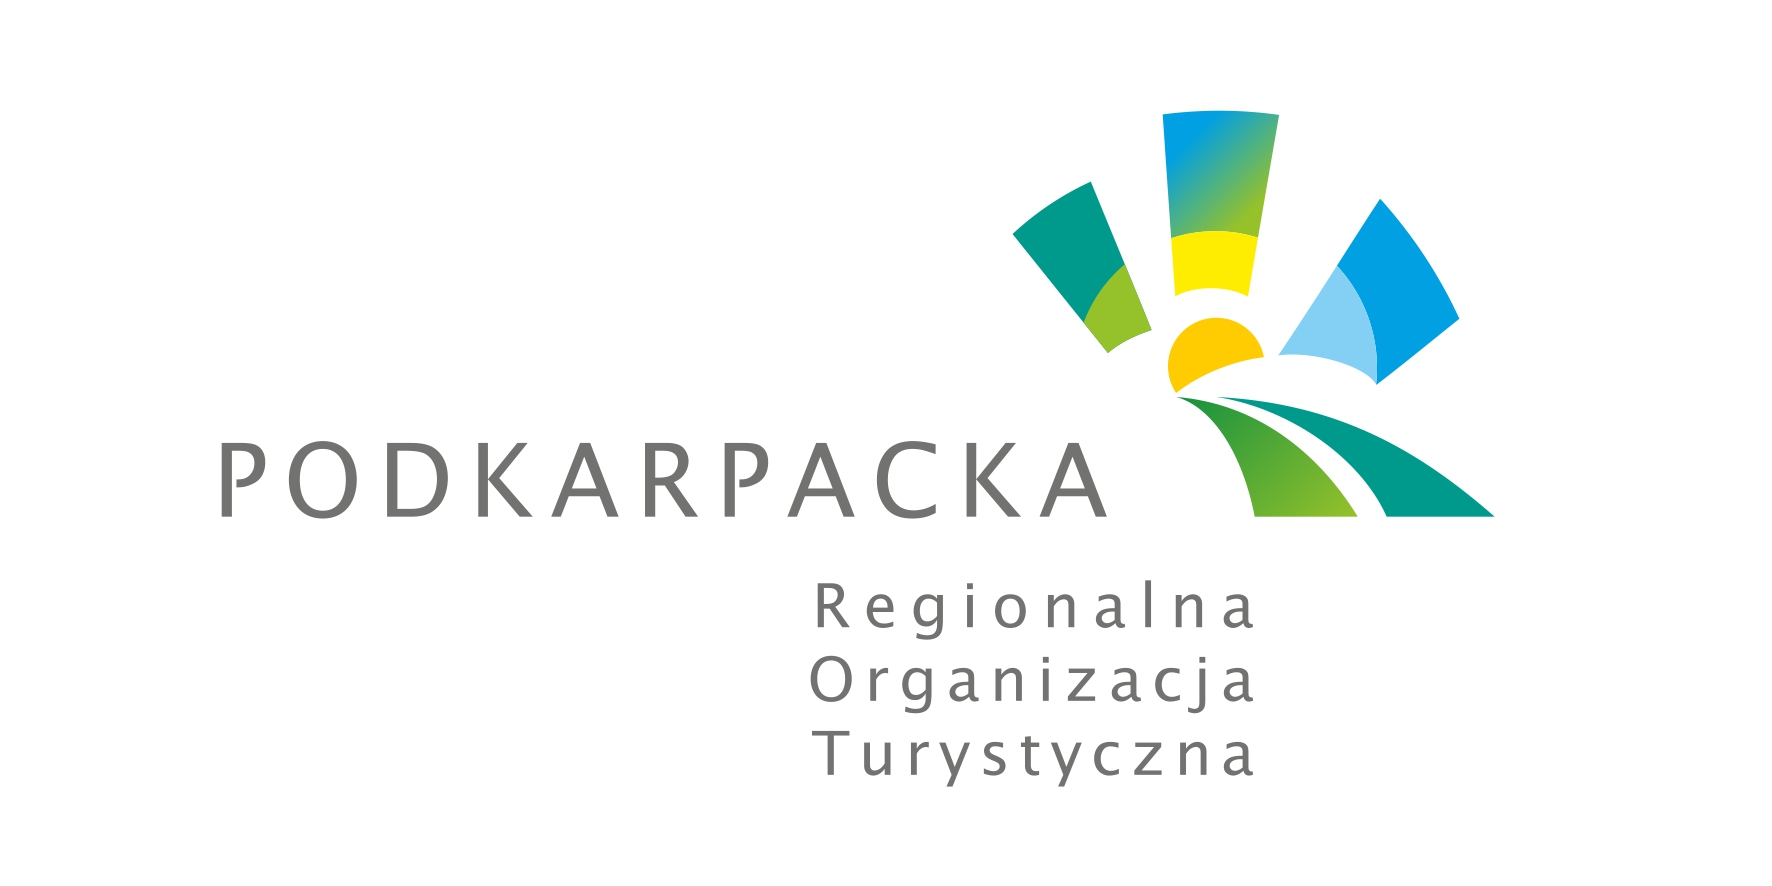  Podkarpacka Regionalna Organizacja Turystyczna